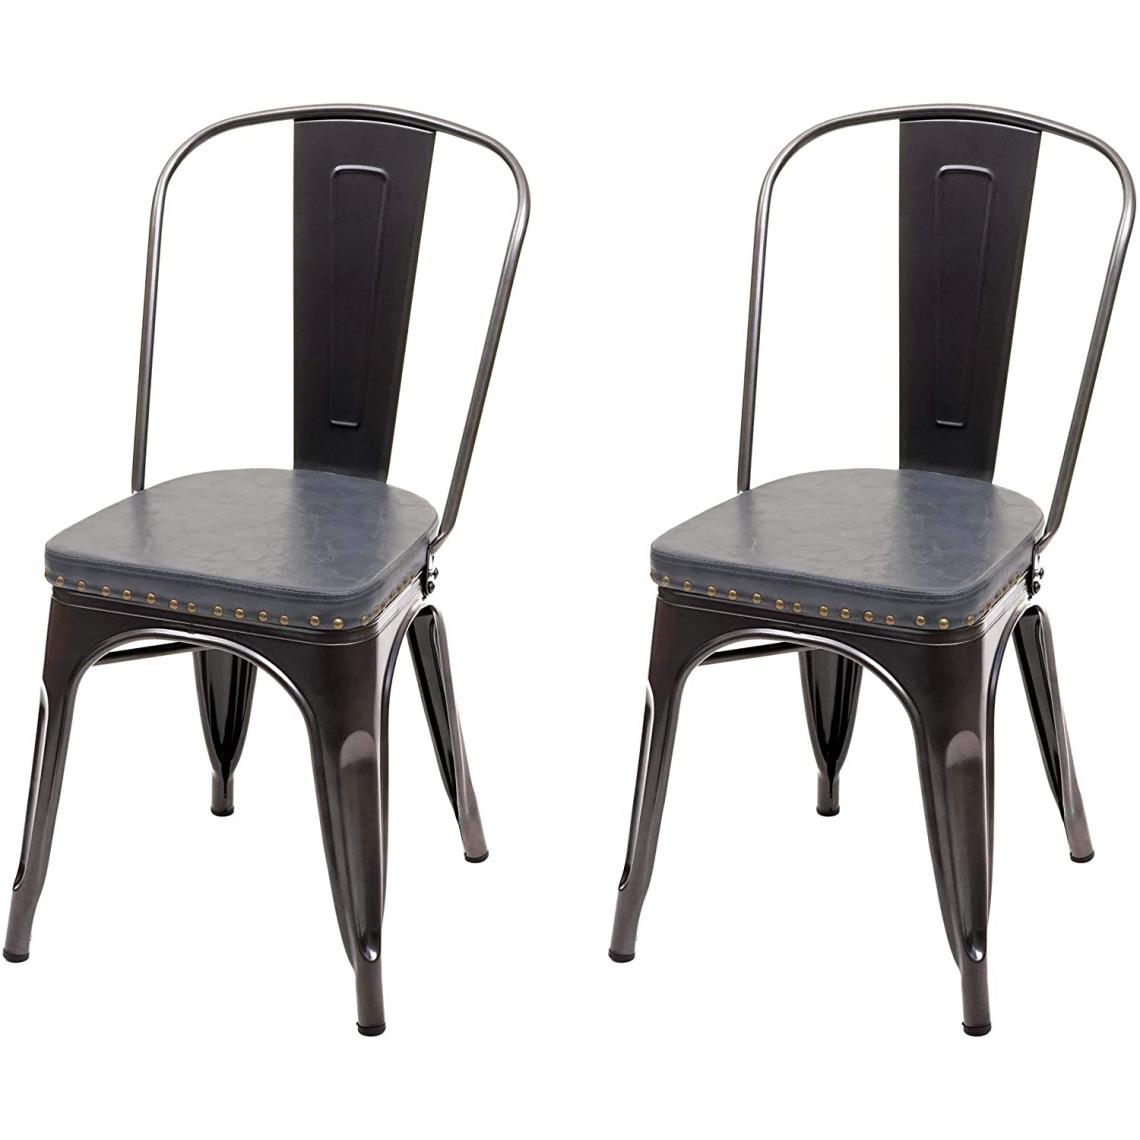 Decoshop26 - 2x chaises de salle à manger cuisine style industriel métal noir et similicuir gris CDS04456 - Chaises